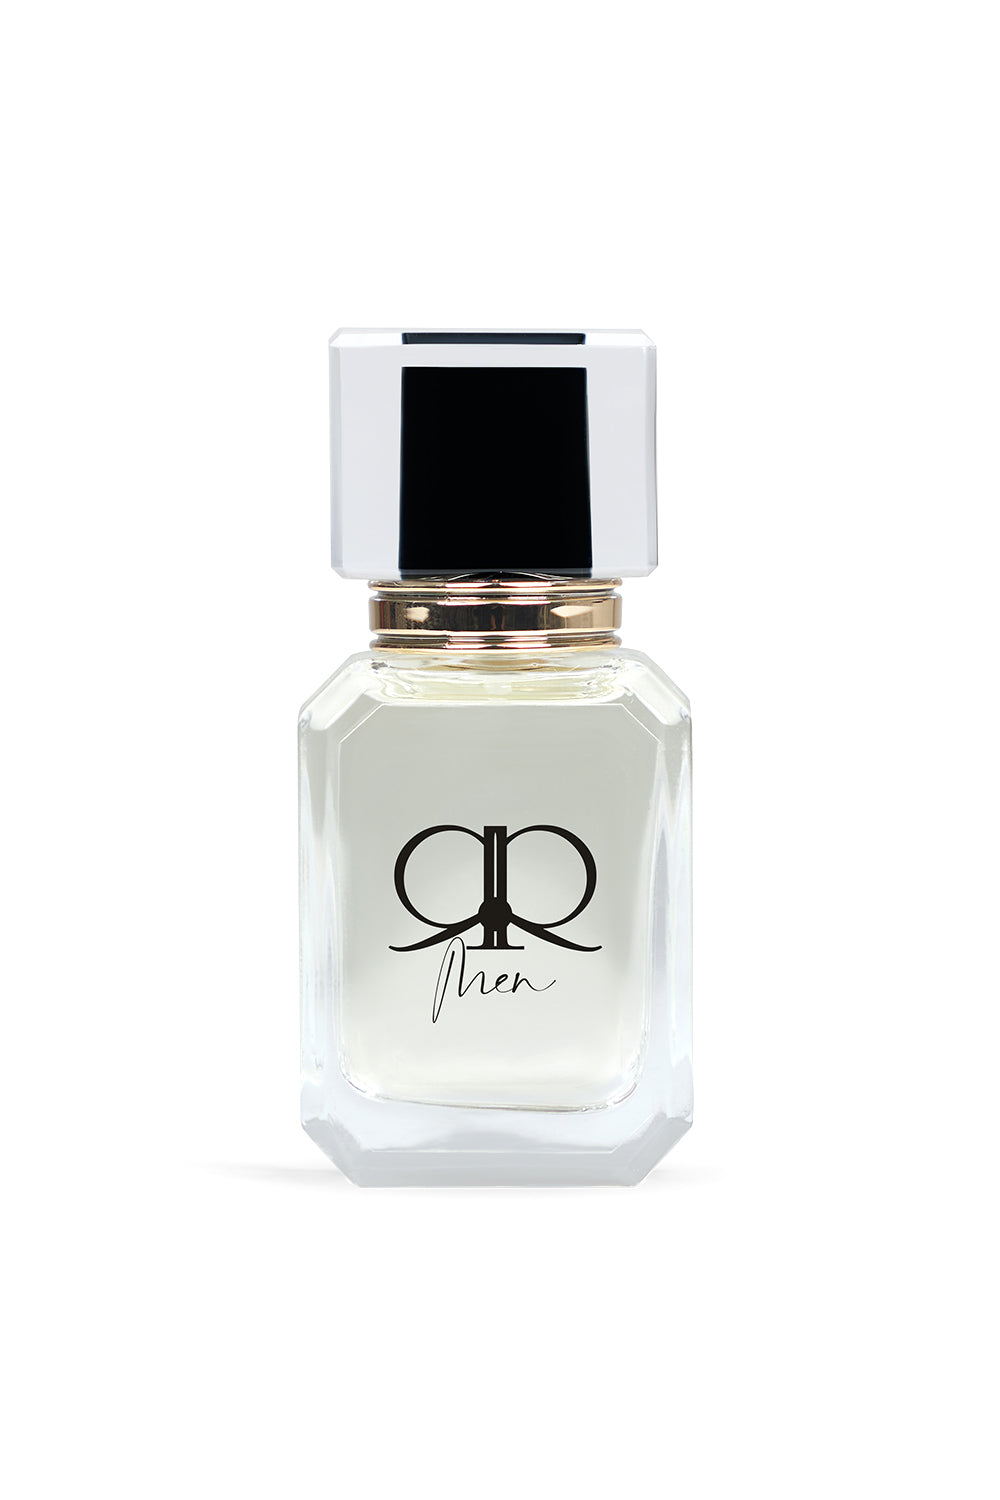 RR Parfum for Men